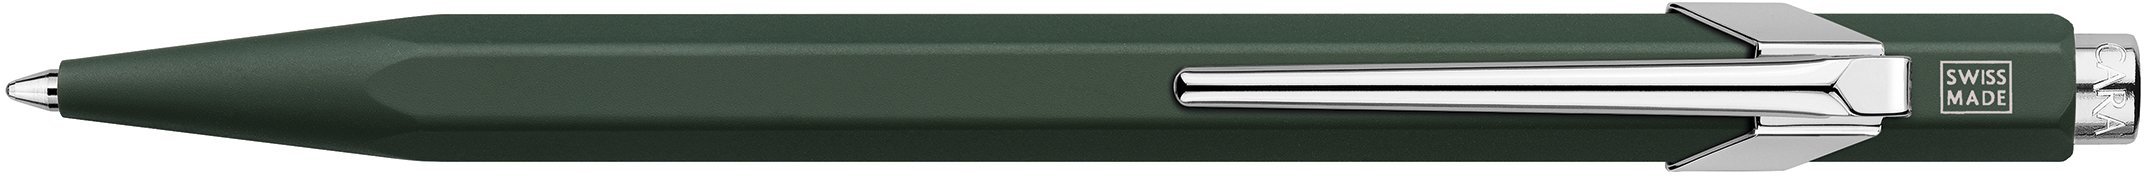 Шариковая ручка Caran d'Ache Office Paul Smith 2, Racing Green в подарочной коробке